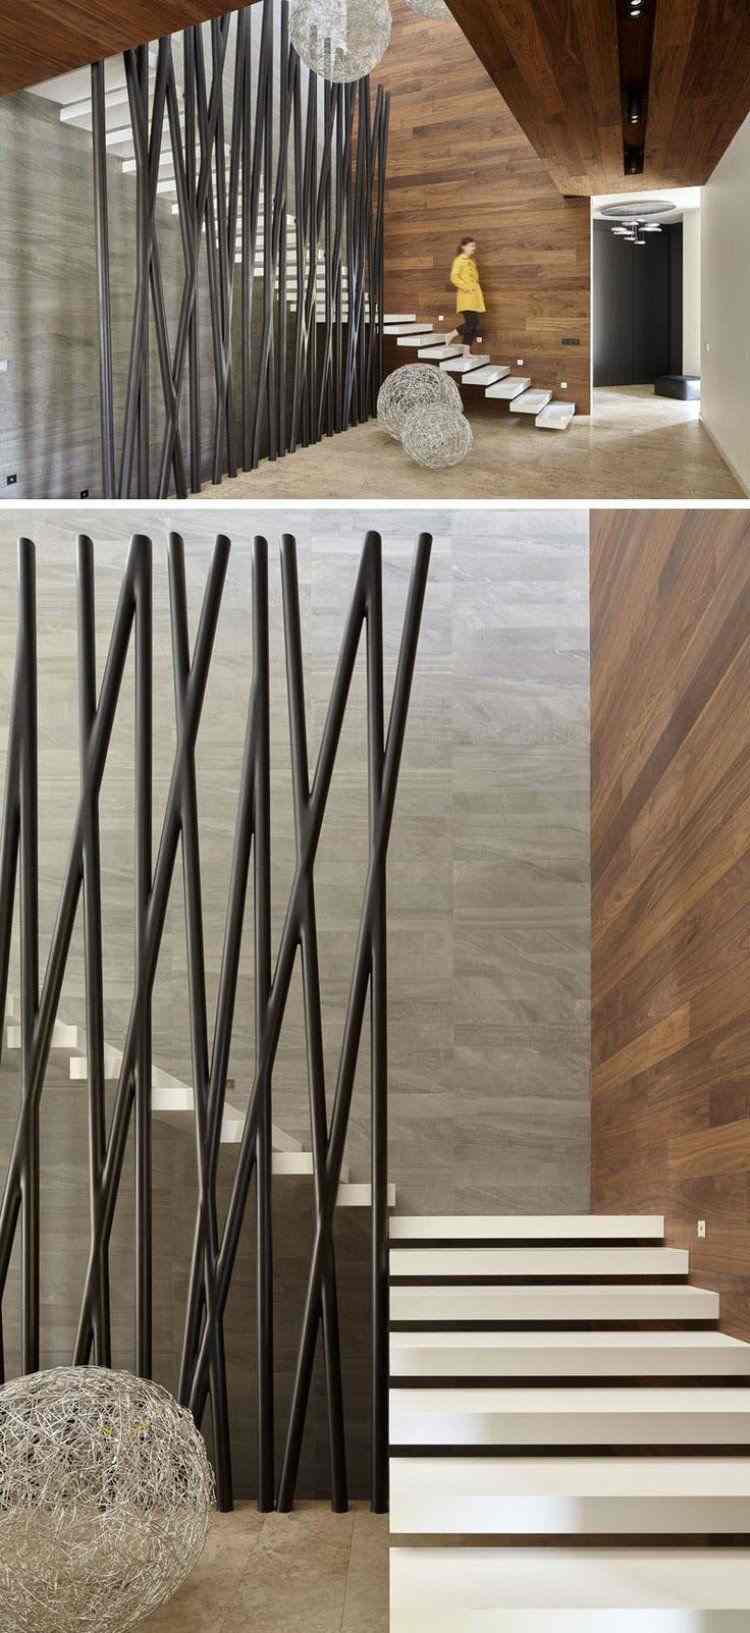 absturzsicherung treppe moderne ideen für treppenschutzgitter stöcke modern trendig zeitgenössisch design kombinieren